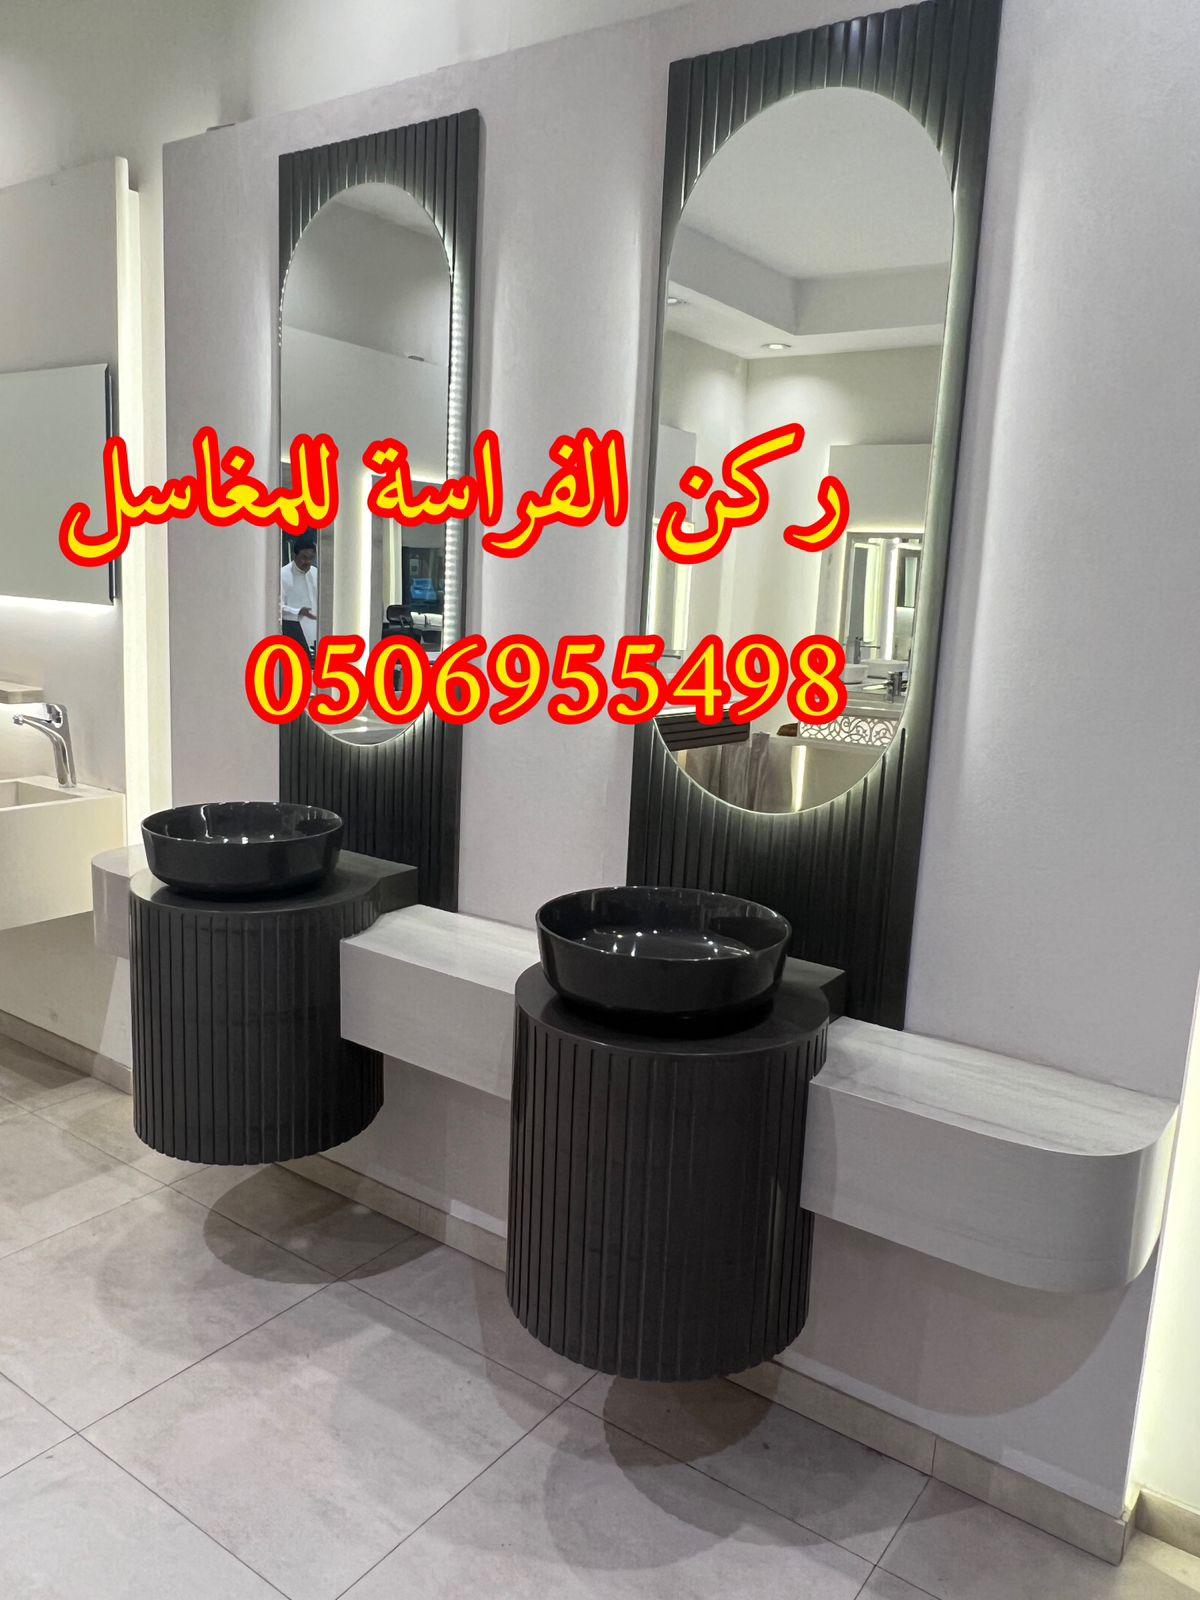 اشكال مغاسل رخام حديثة في الرياض,0506955498 618148493